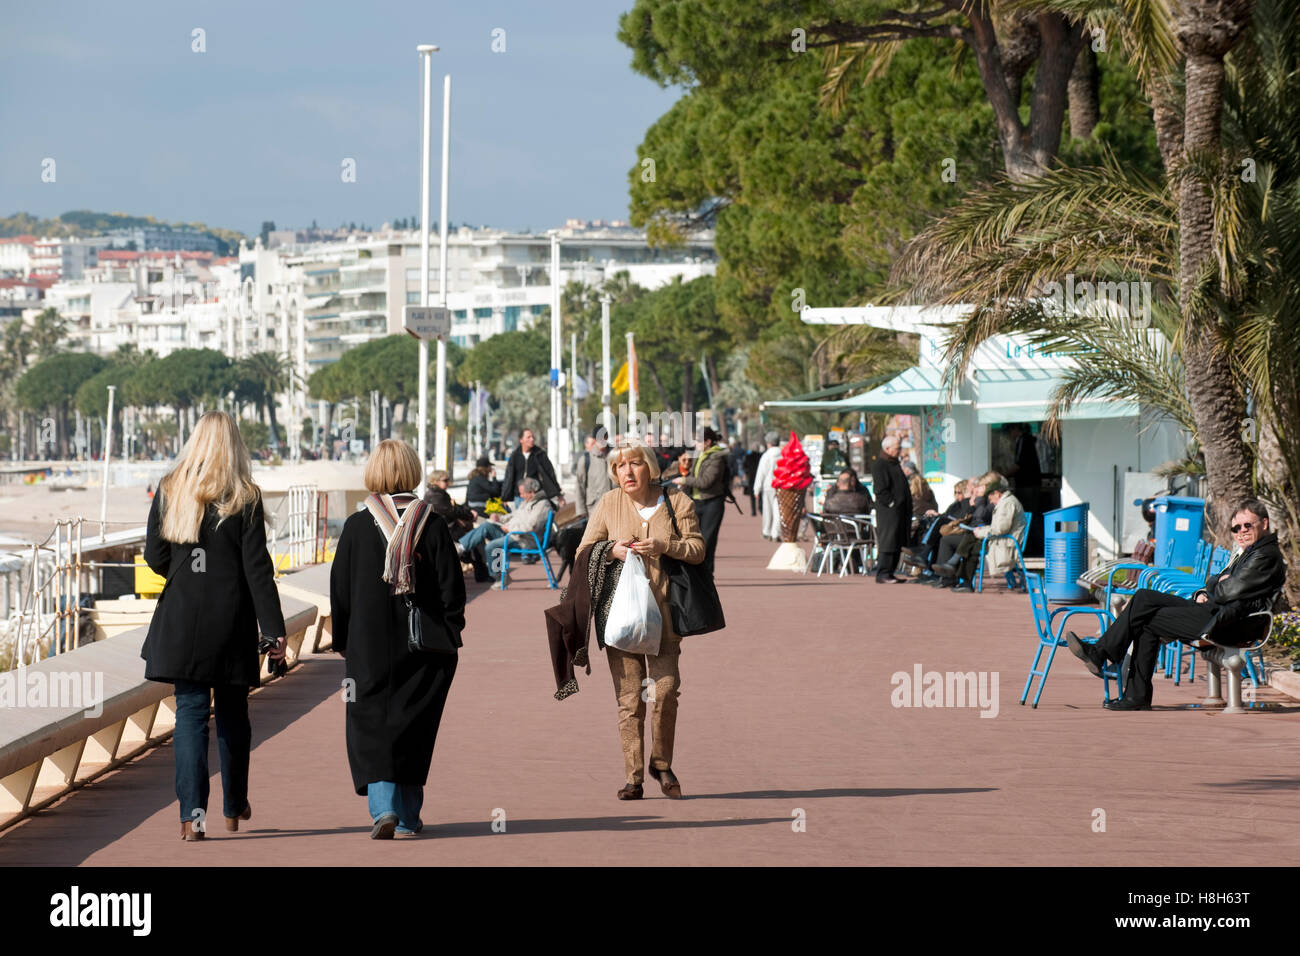 Frankreich, Cote d Azur, Cannes, Boulevard de la Croisette, elegante Flanierpromenade Banque D'Images